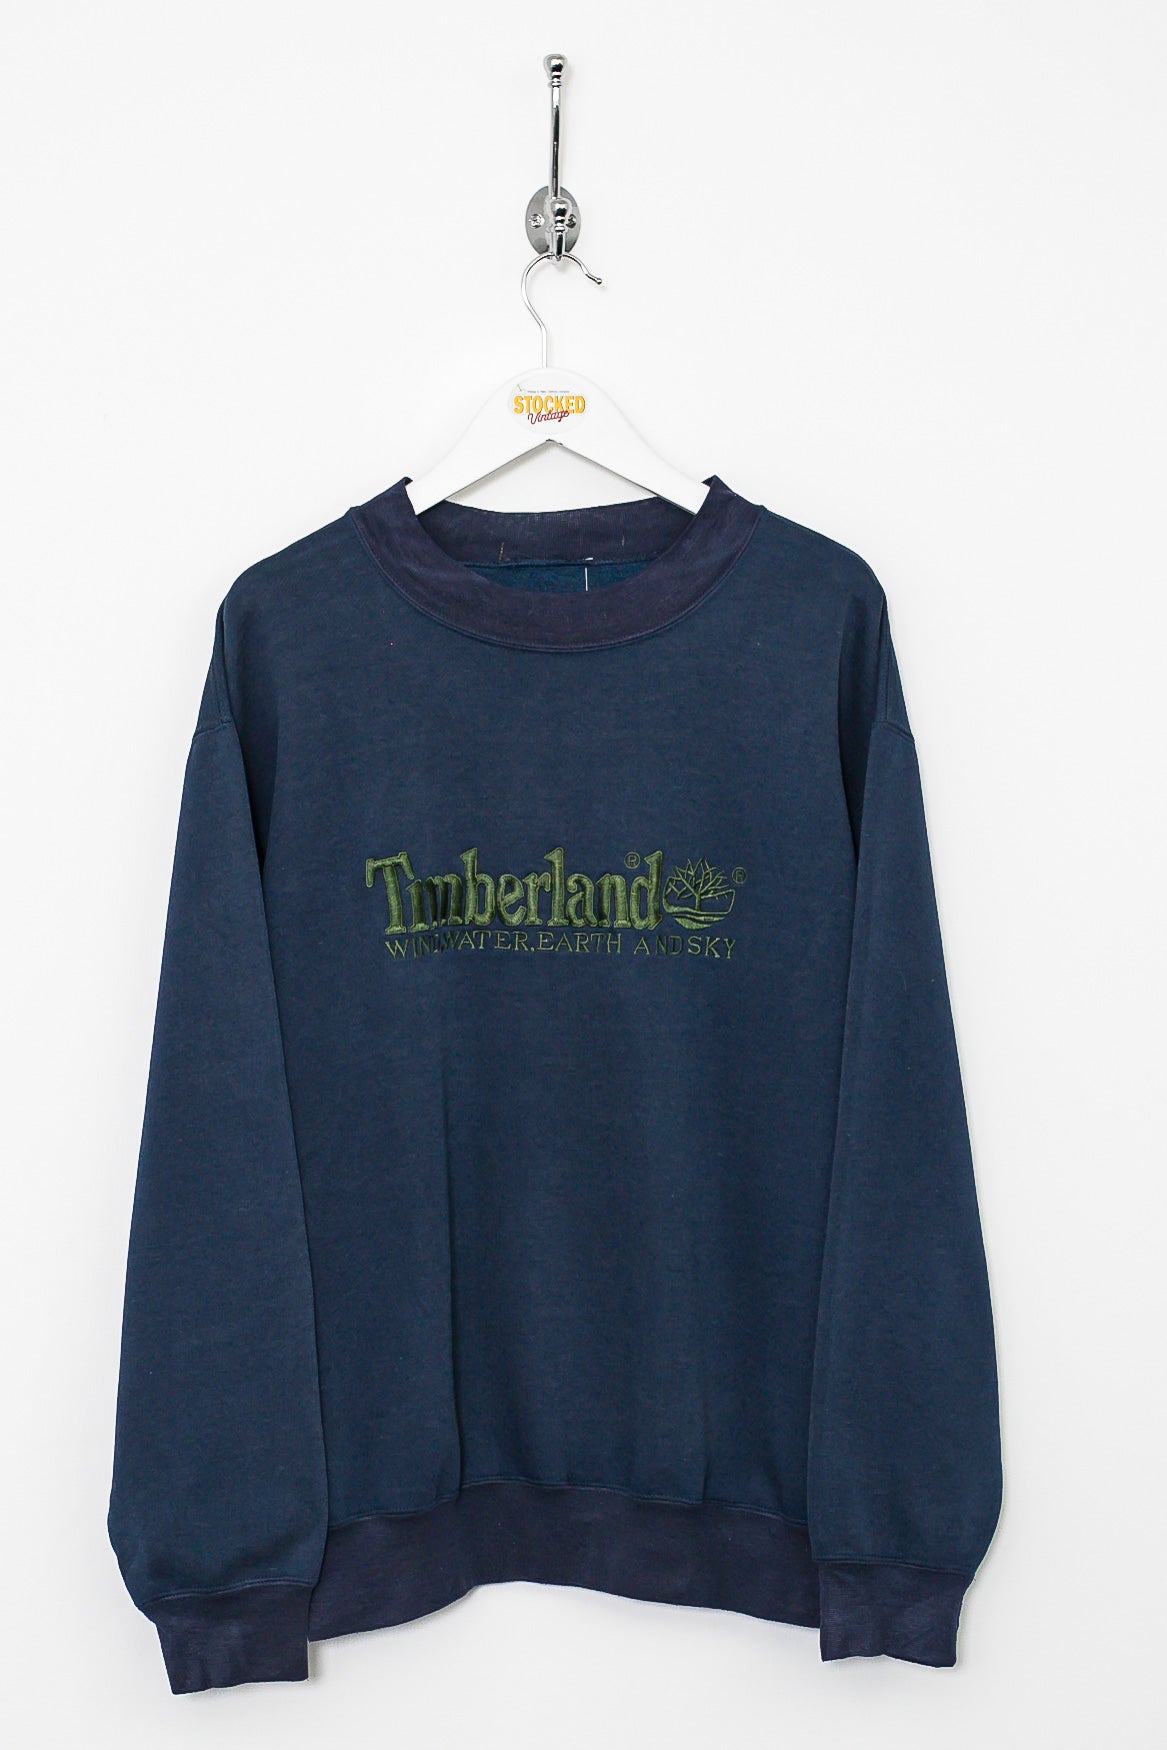 00s Timberland Sweatshirt (S)